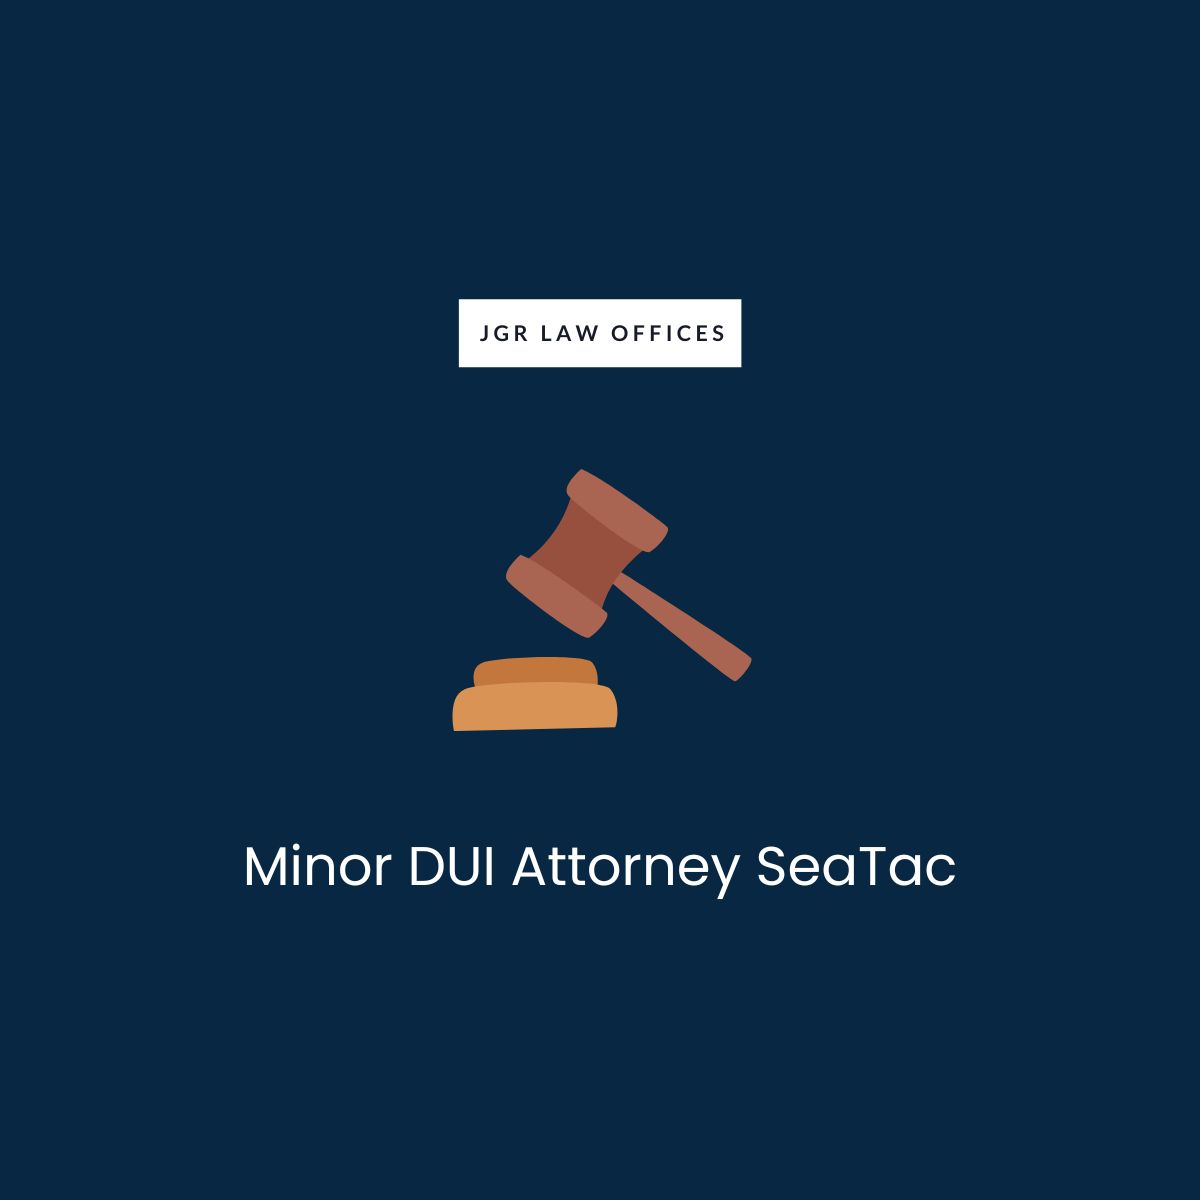 Minor DUI Attorney SeaTac Minor DUI Minor DUI